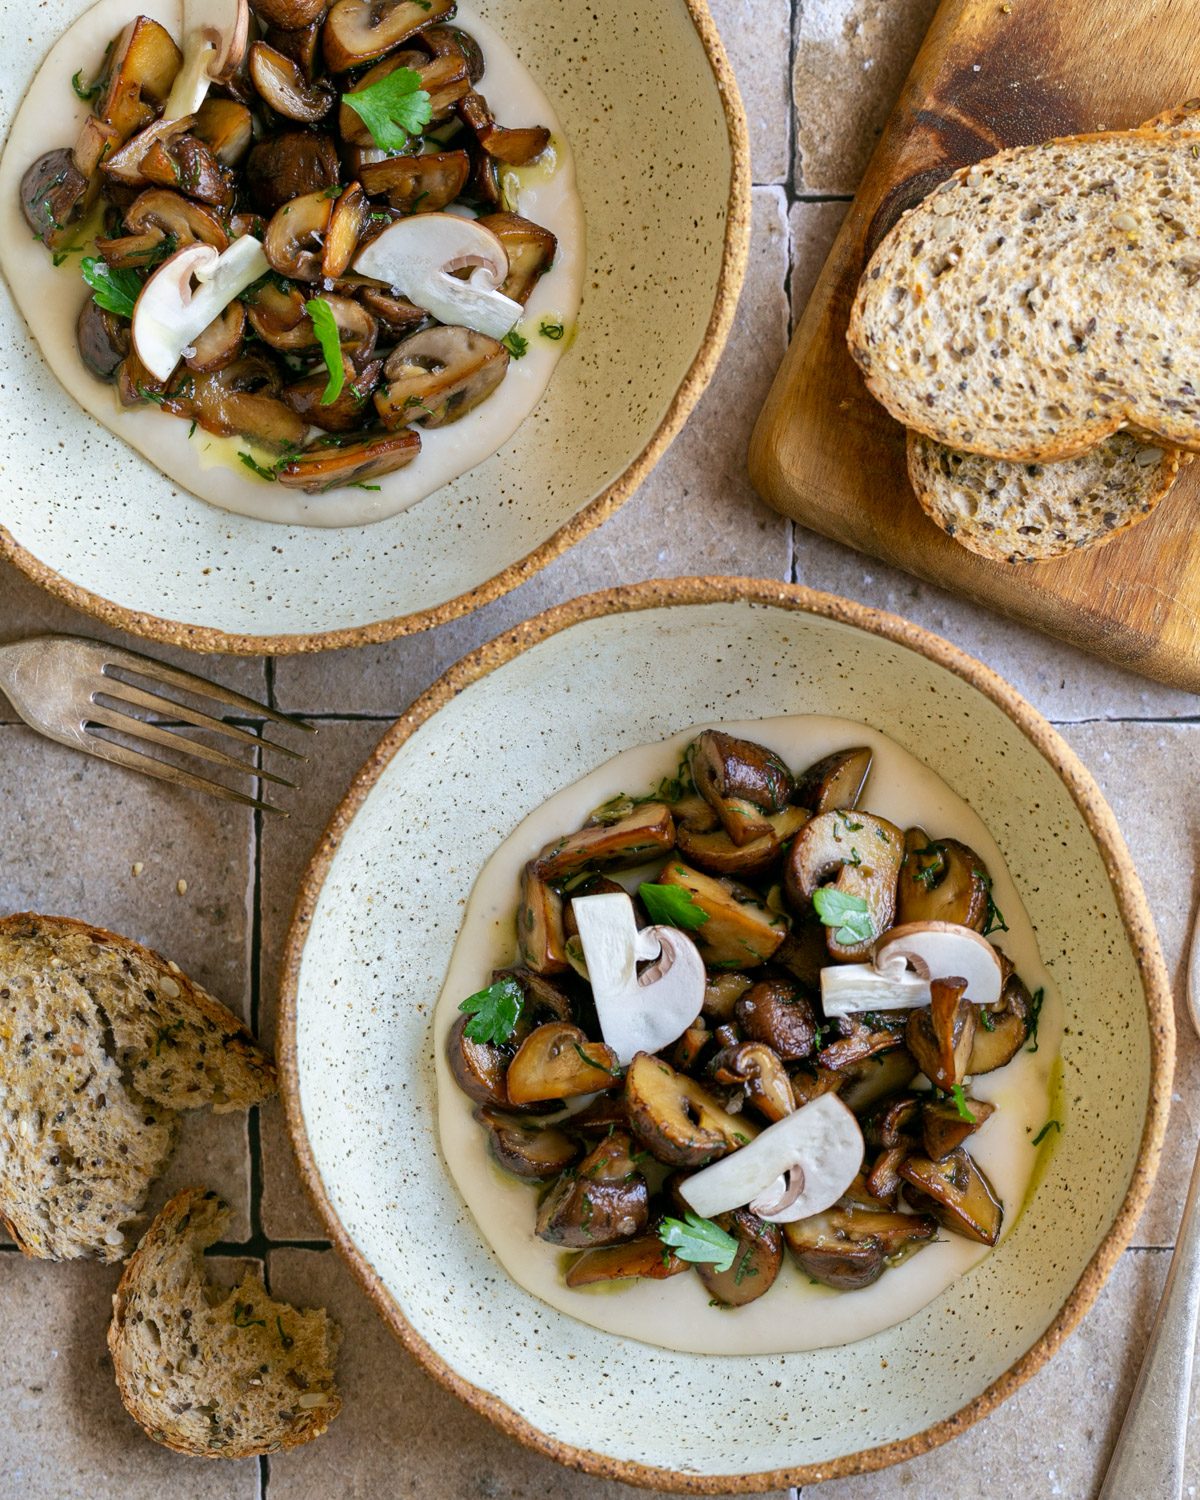 Roasted mushrooms served on canneli beans hummus